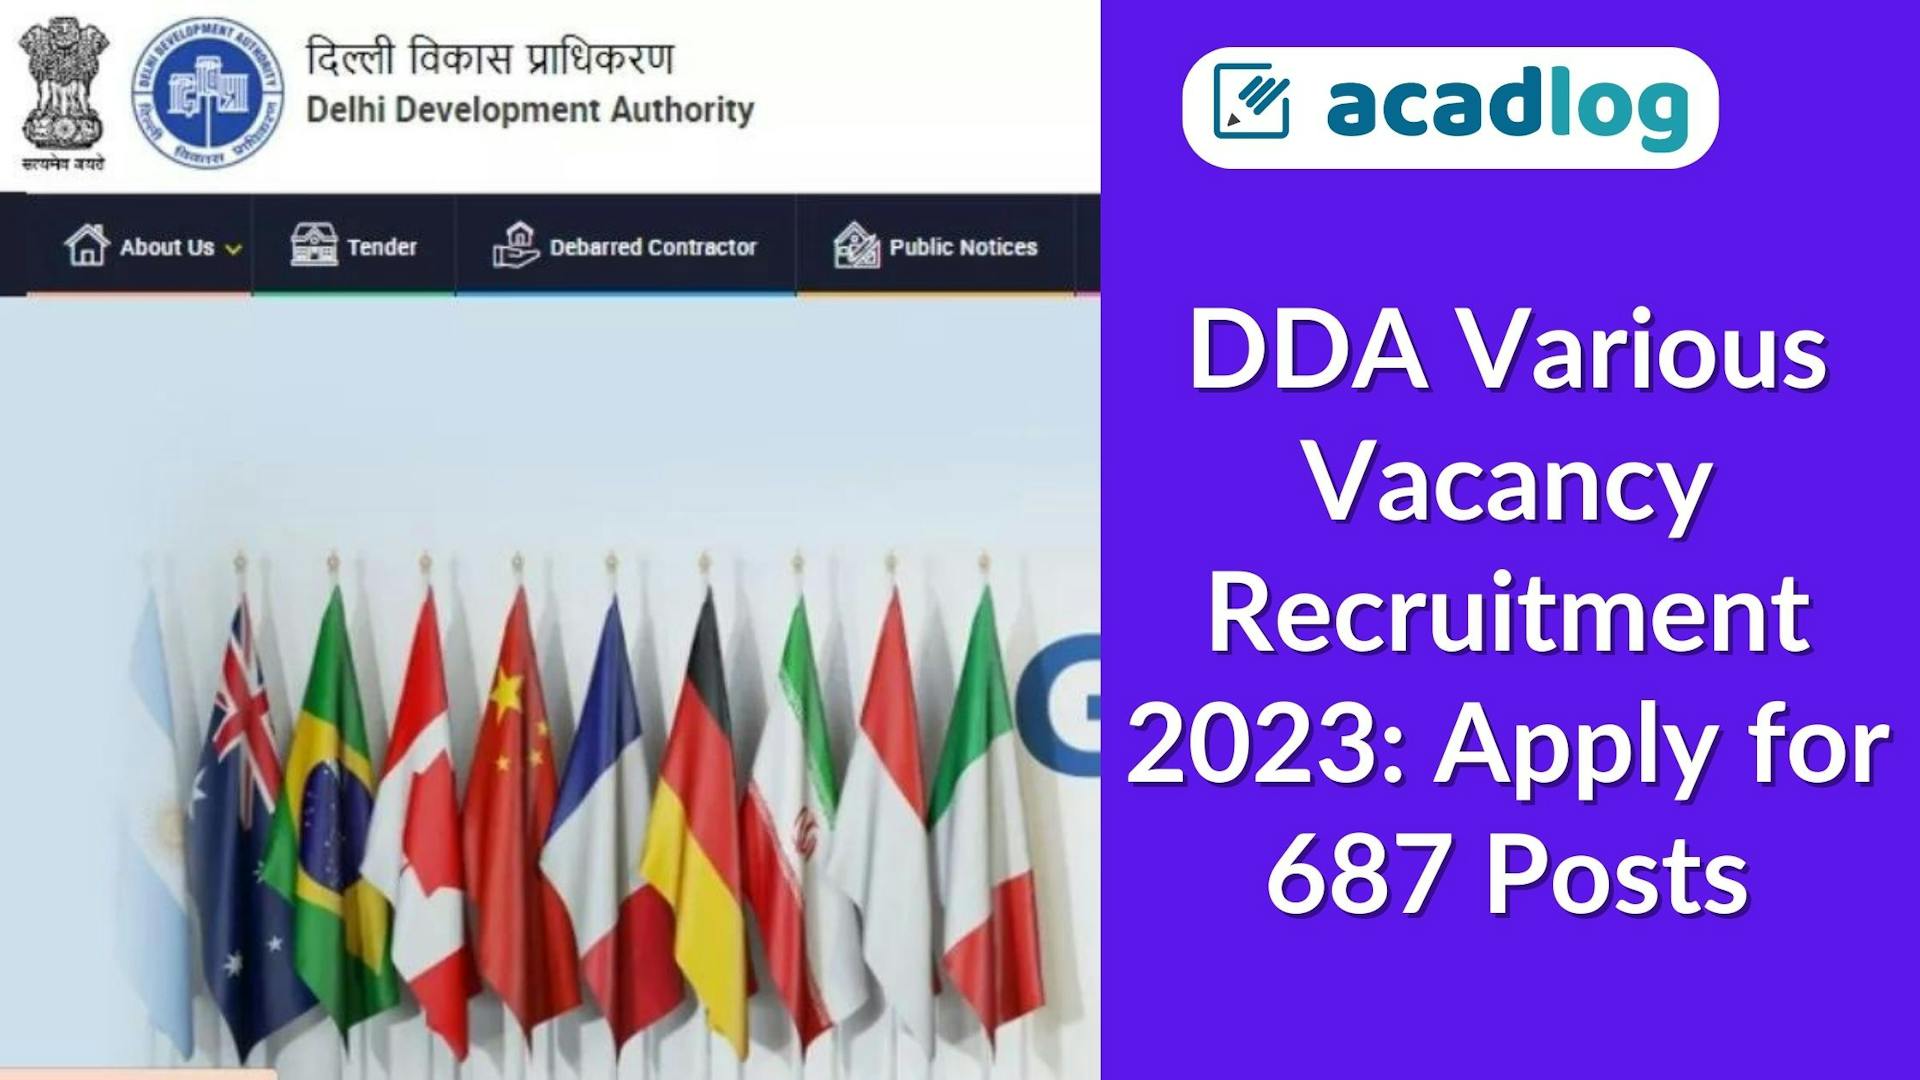 Delhi Govt Jobs: DDA Recruitment 2023 for Various Posts